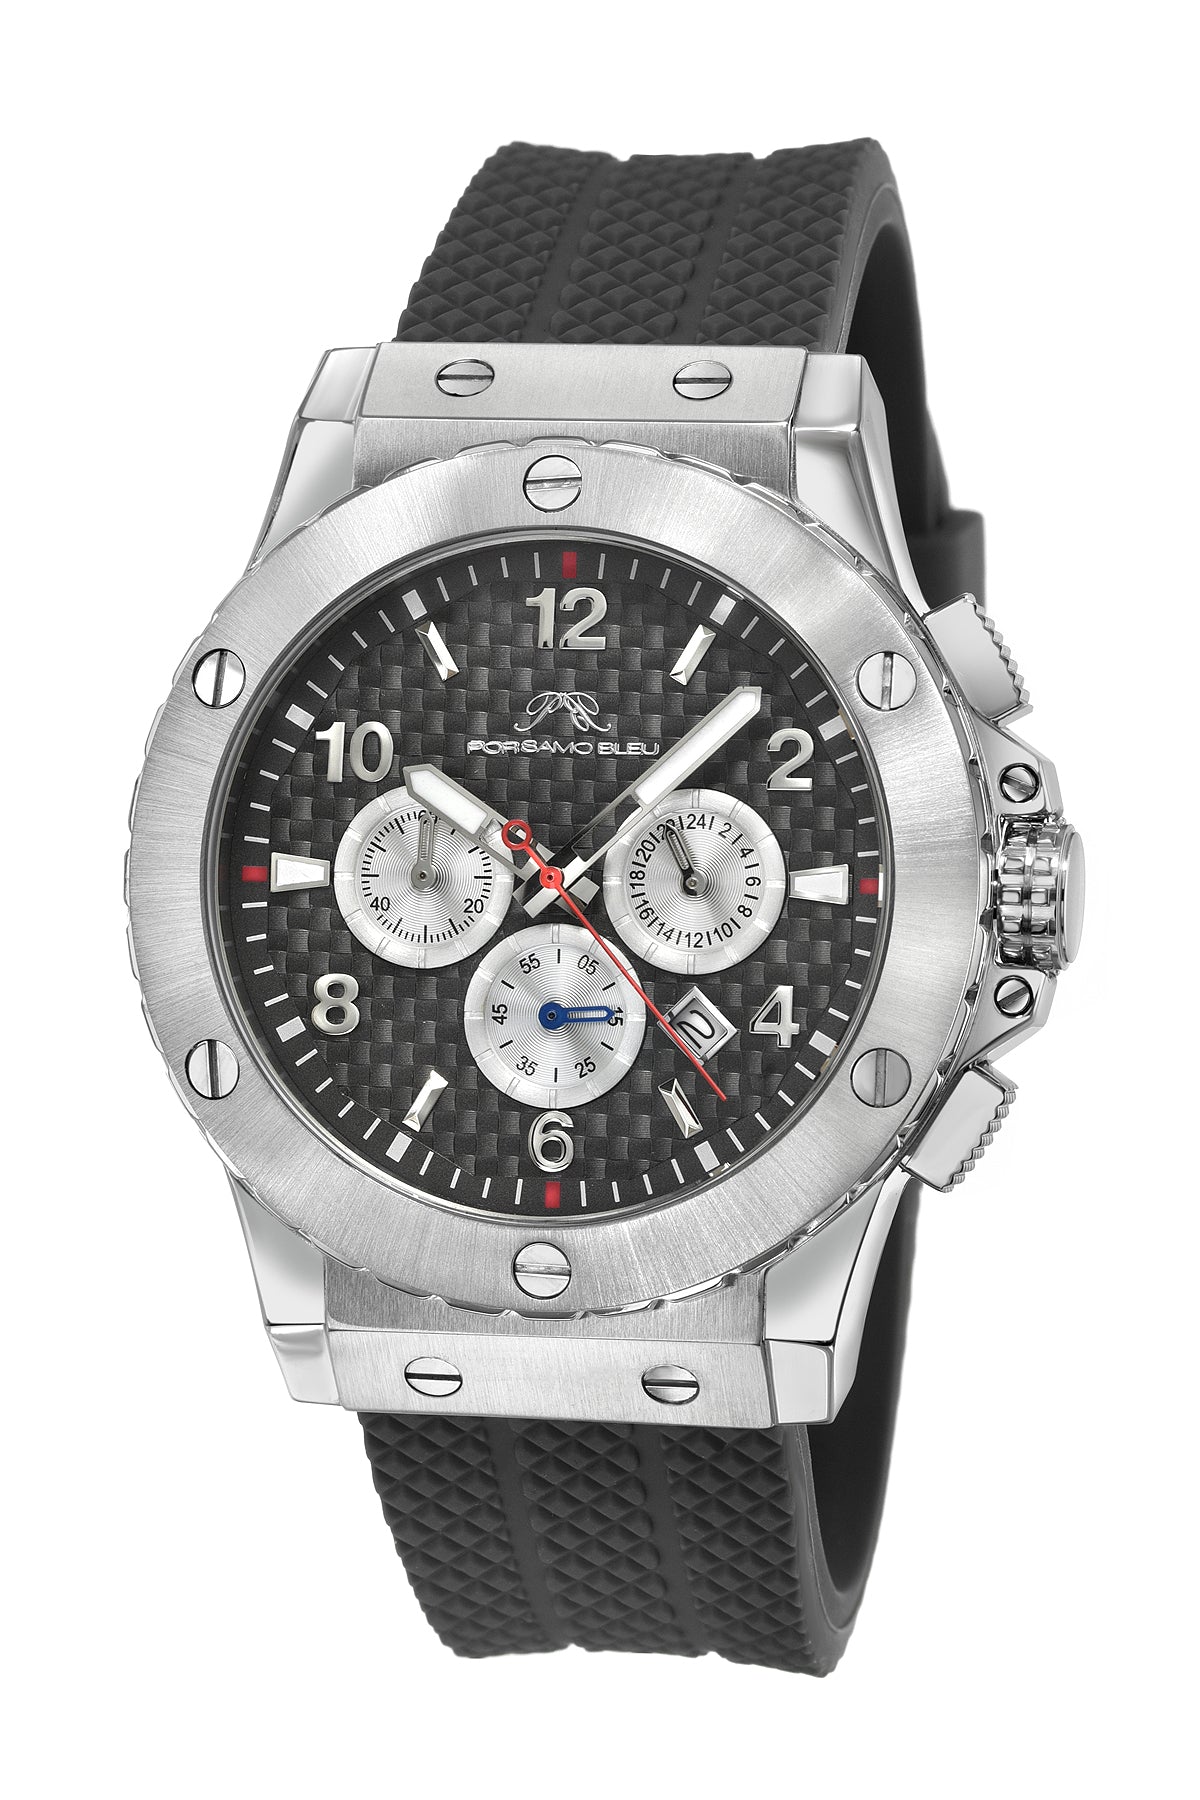 Porsamo Bleu Marcus Luxury Chronograph Men's Silicone Watch, Silver, Grey 654BMAR